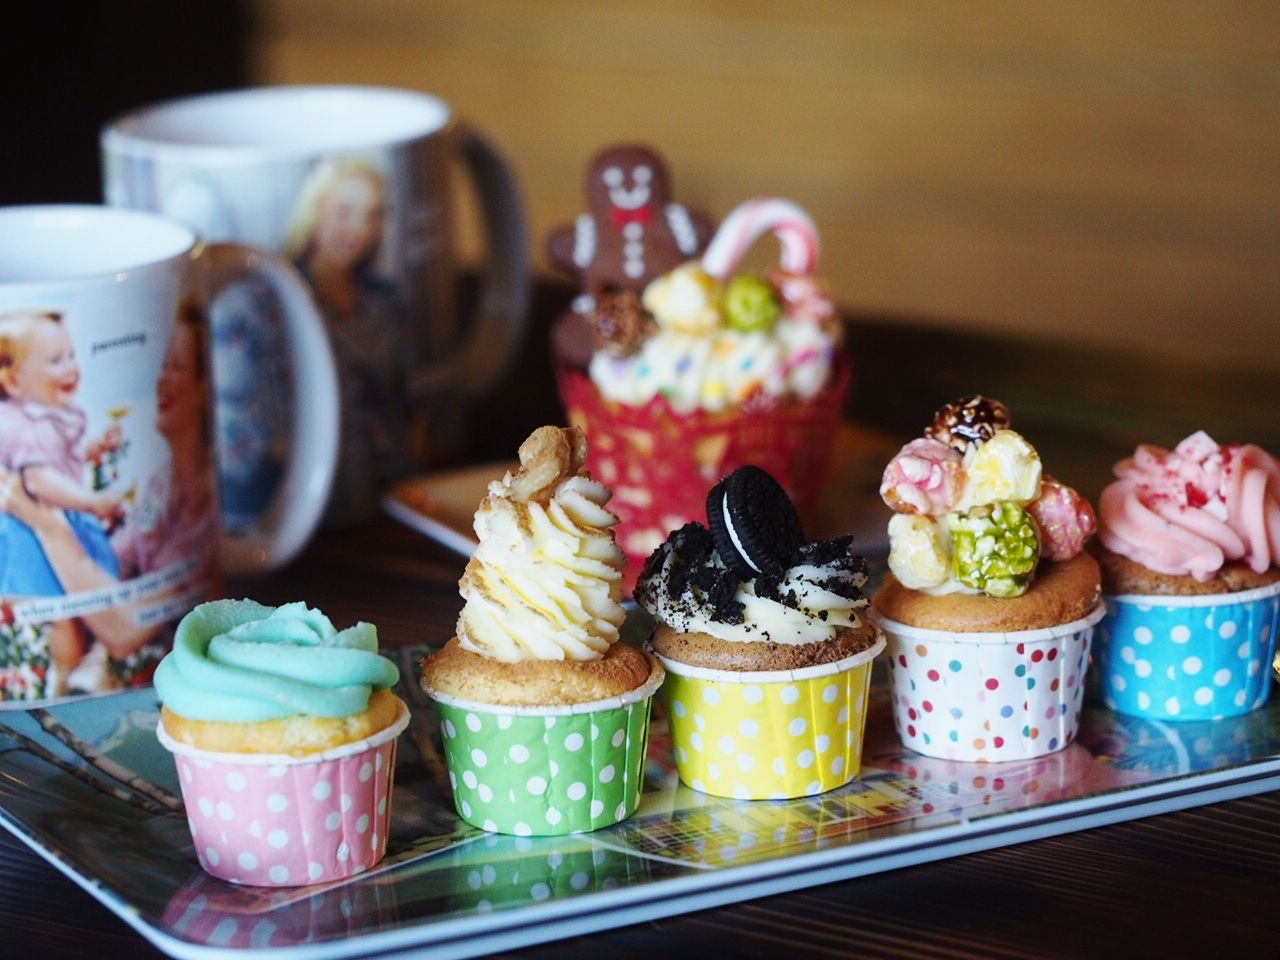 和歌山にあるカップケーキ専門店 Cups Coffee Cupcakes カップス コーヒー カップケーキ でキュートなカップケーキを堪能 スイーツハンター月ウサギの食べ日記 Powered By ライブドアブログ